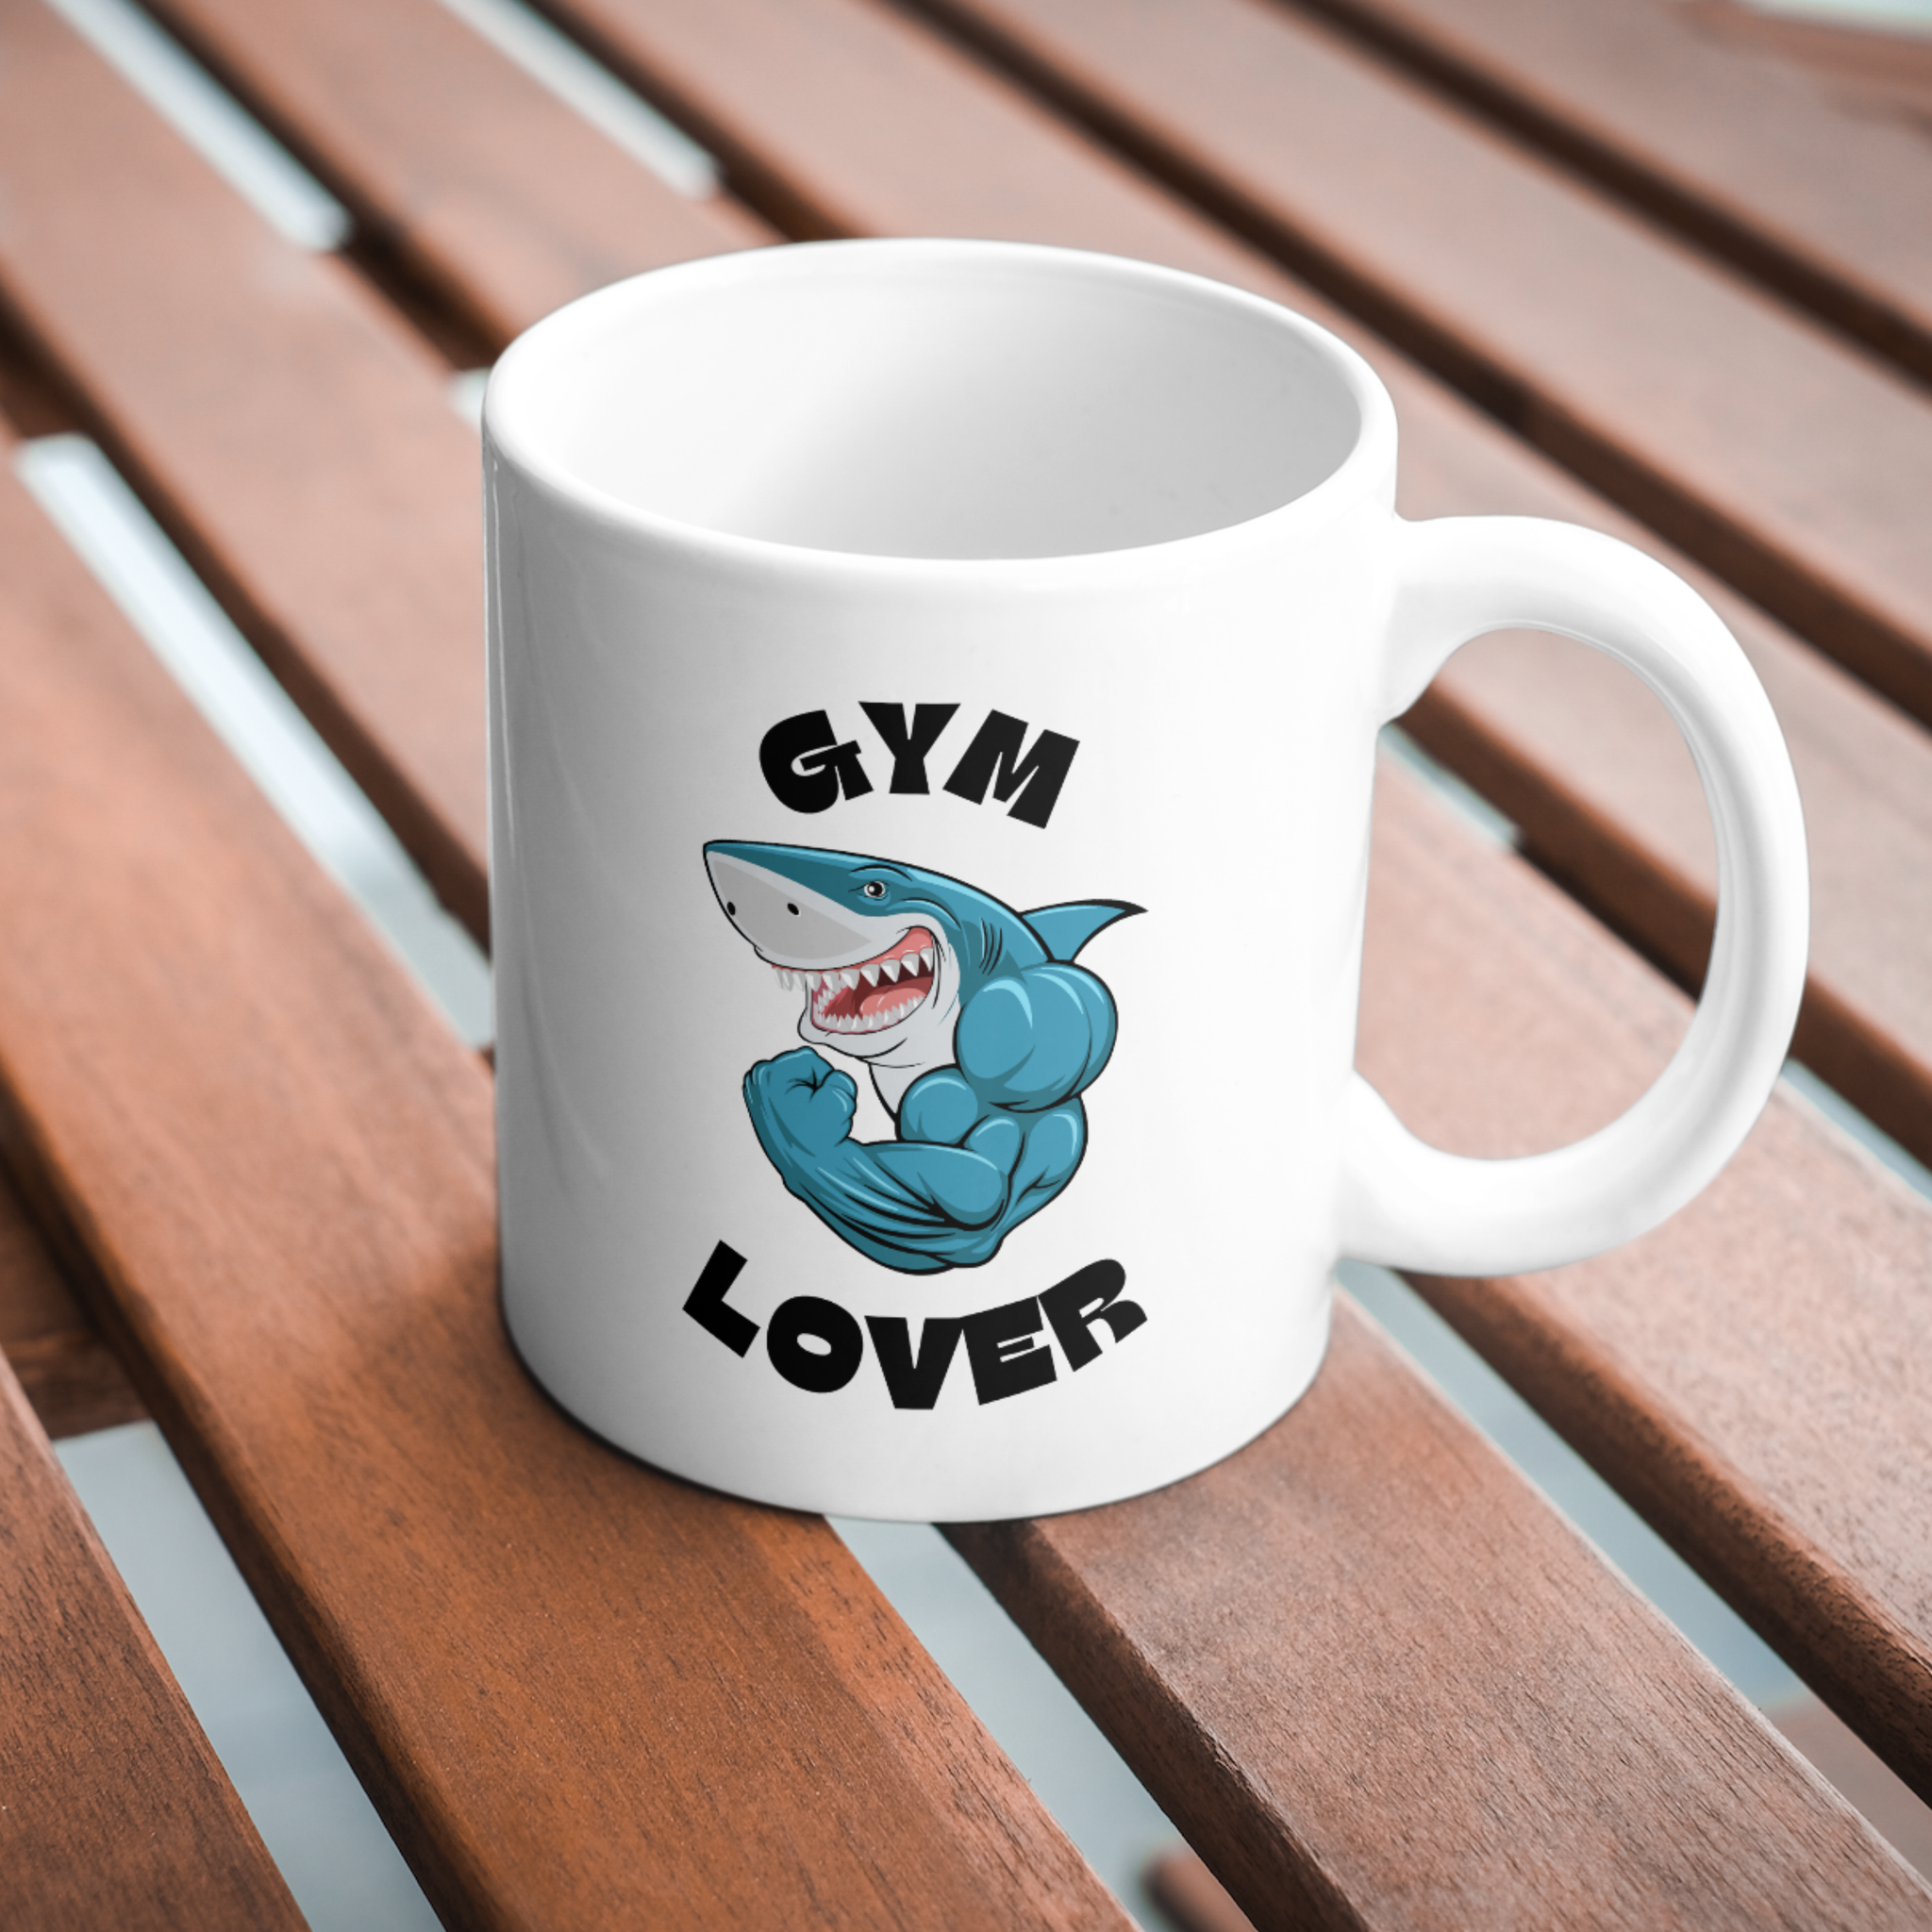 Gym Lover Coffee and Tea Ceramic Mug 11oz